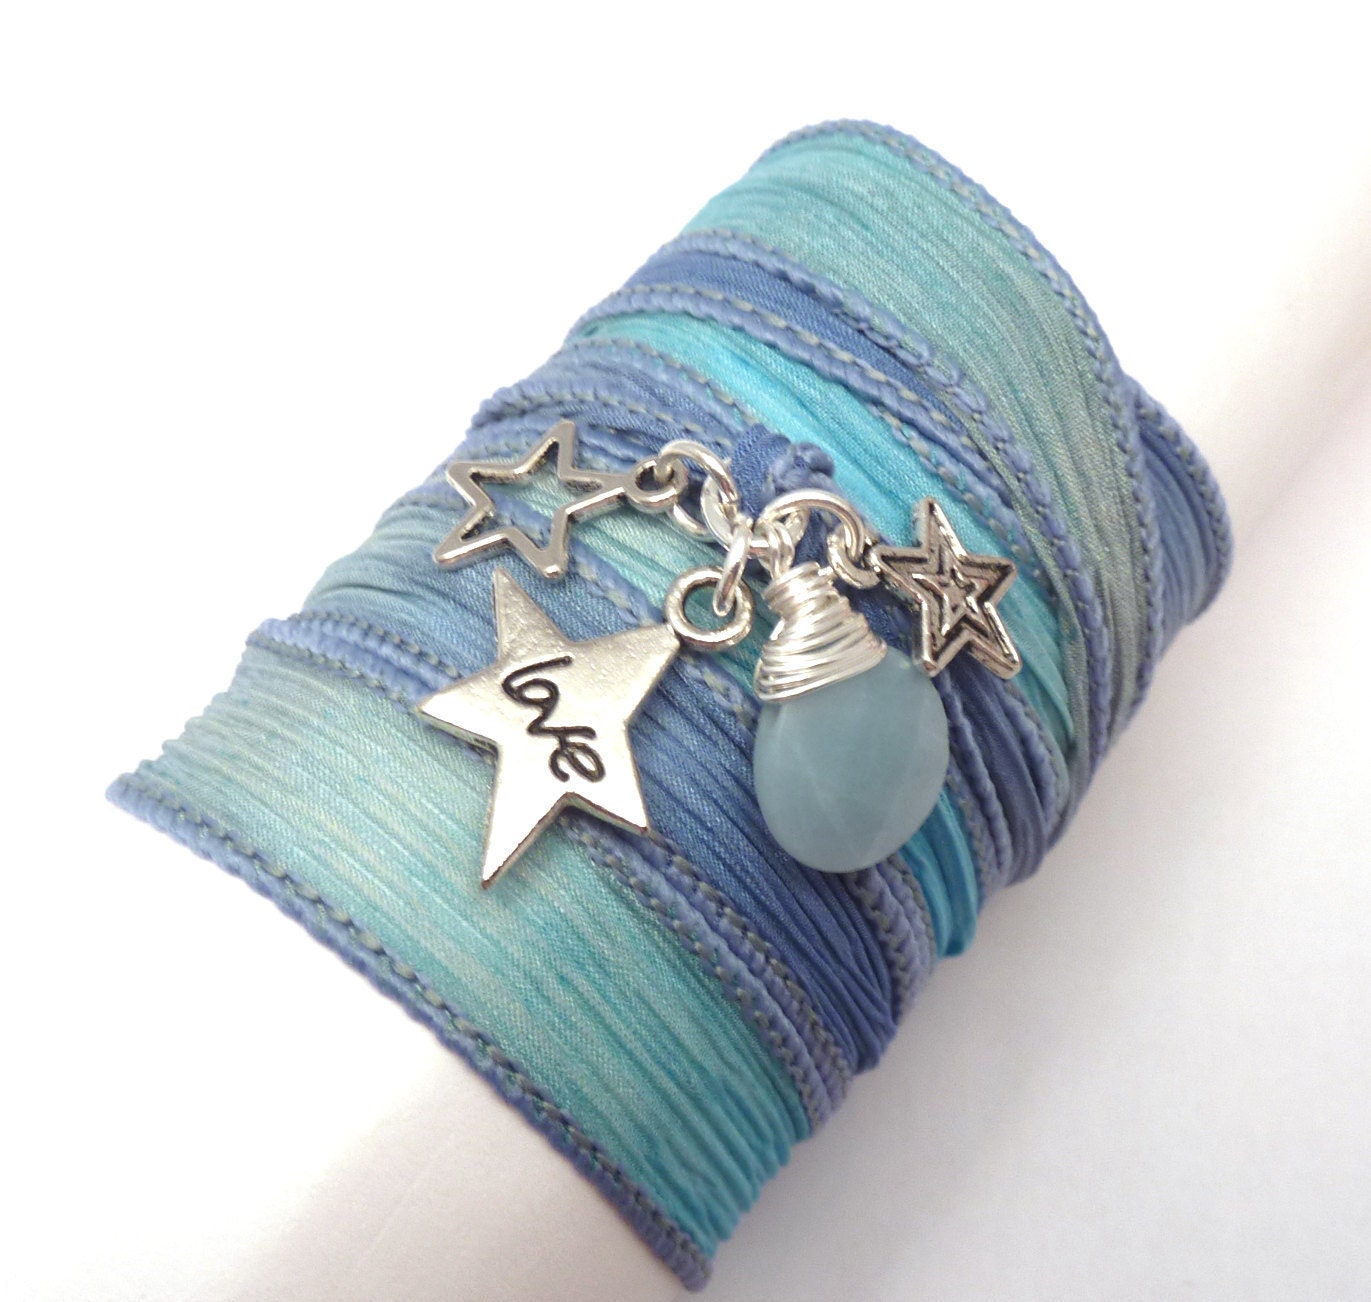 Silk Ribbon Wrap Bracelet with Star Charms, wrapped wrapping bracelet, wrap around,wrist wrap